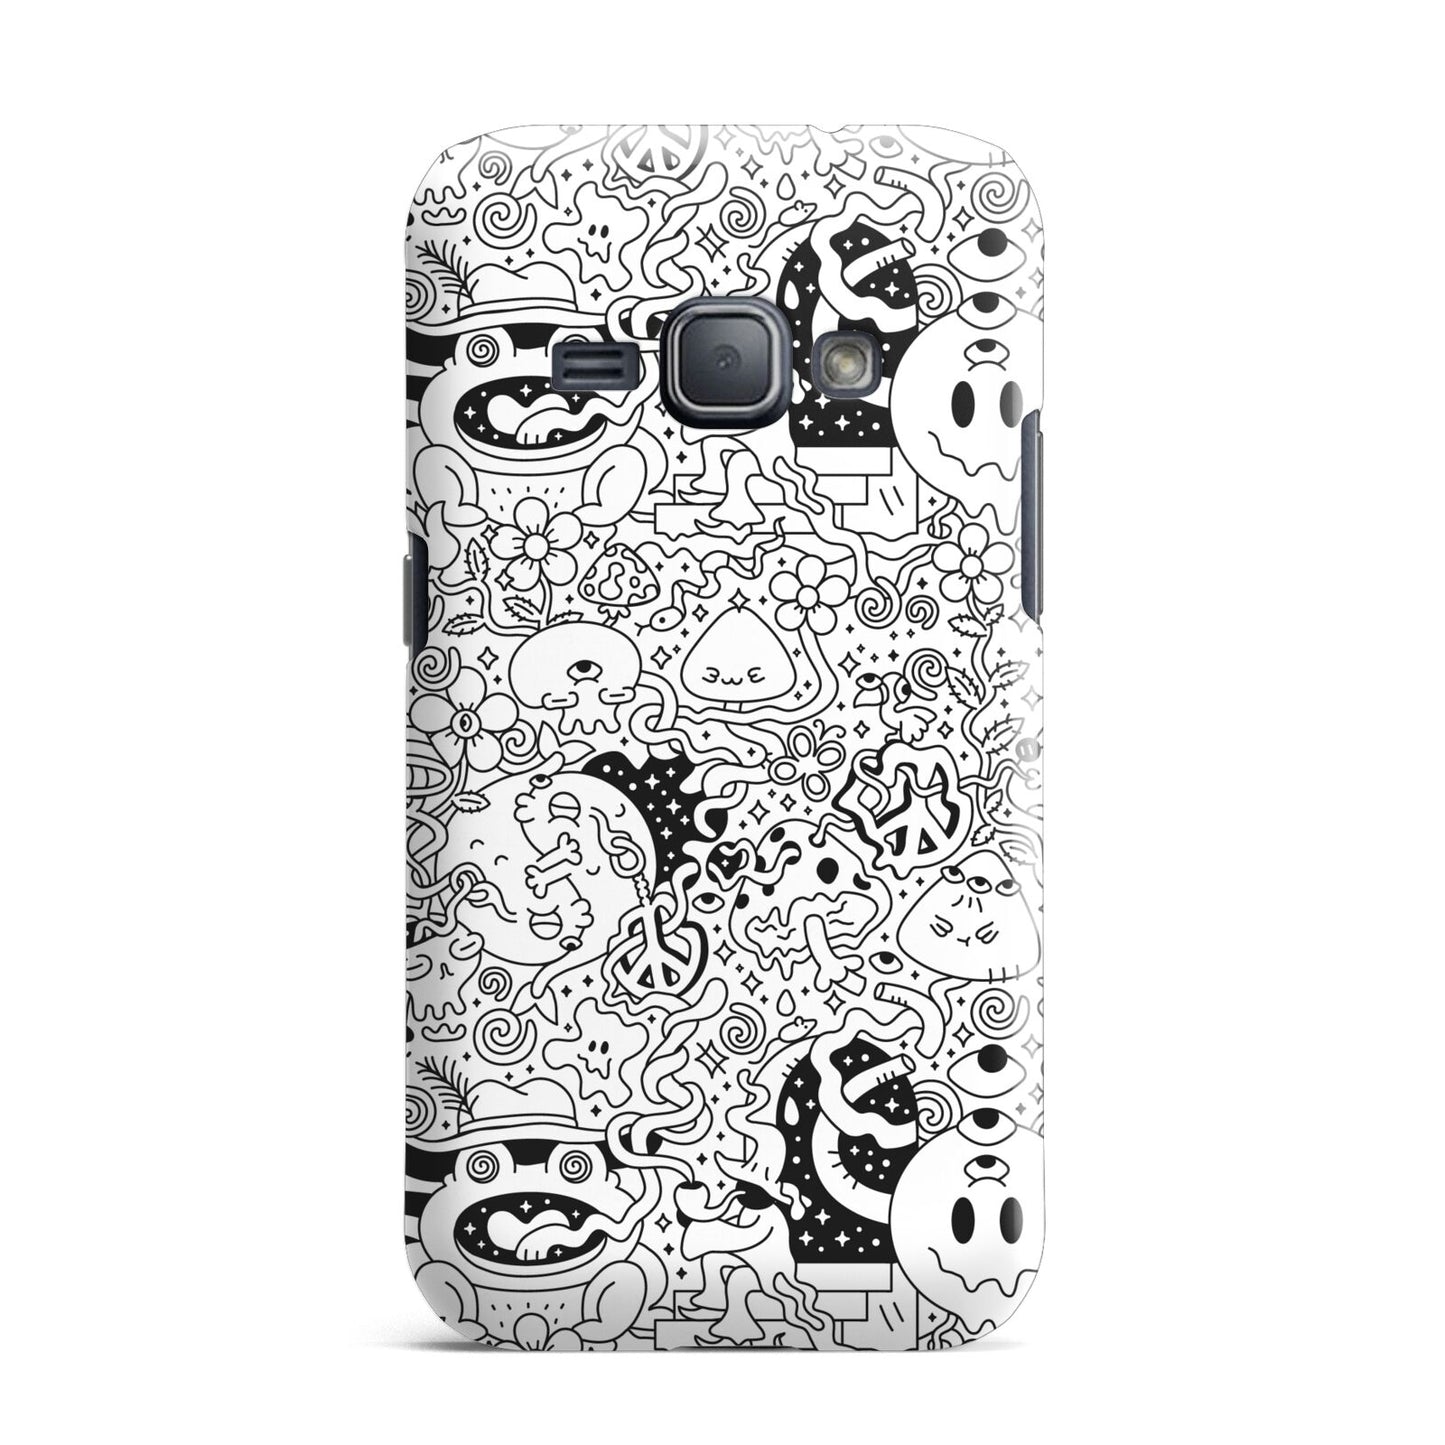 Psychedelic Cartoon Samsung Galaxy J1 2016 Case